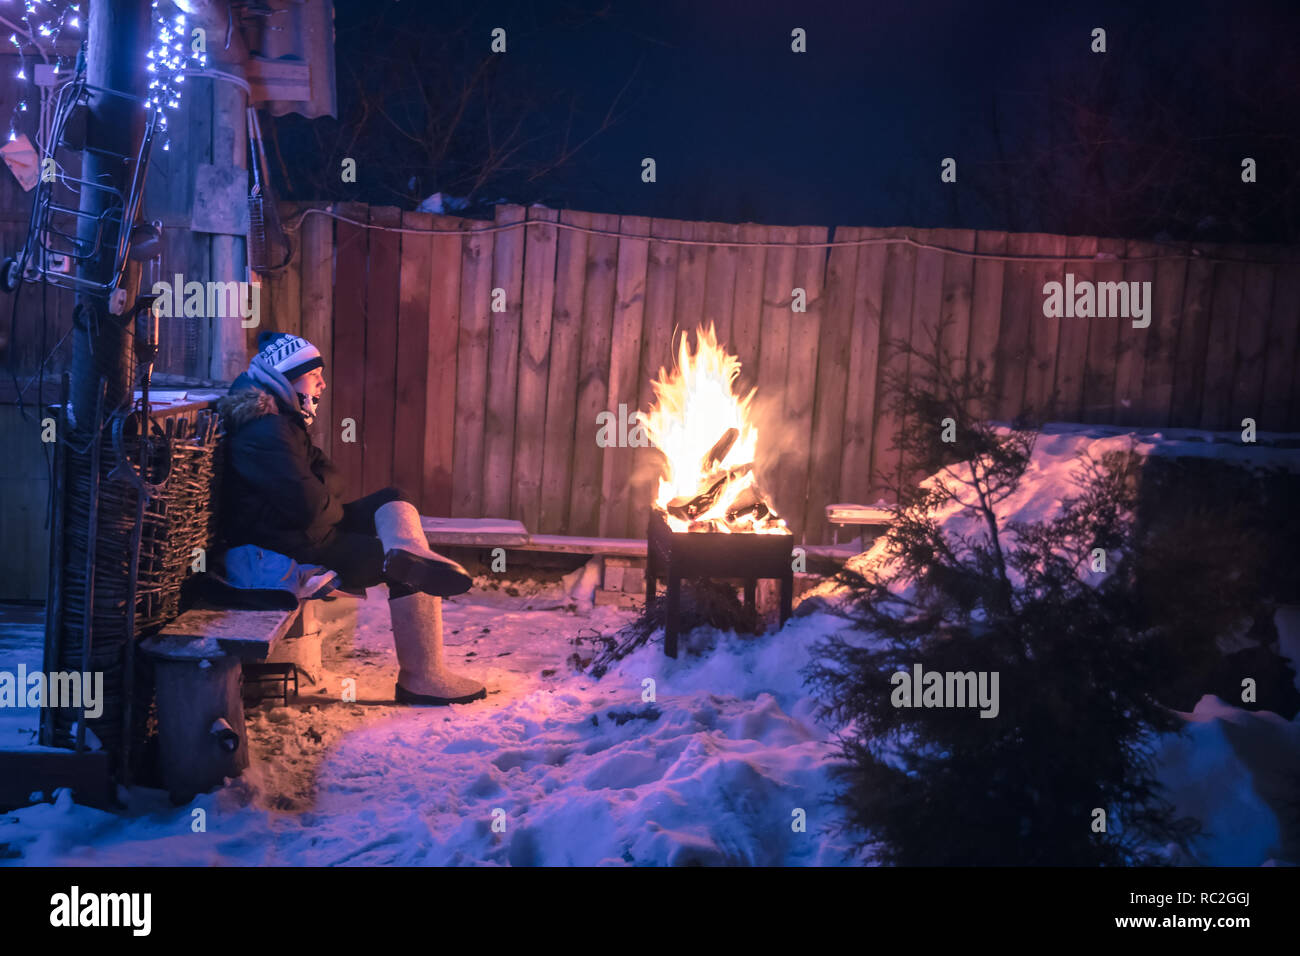 Lonely réfléchie d'hiver adolescents manquant et faire chaud au feu dans la campagne enneigée de nuit Banque D'Images